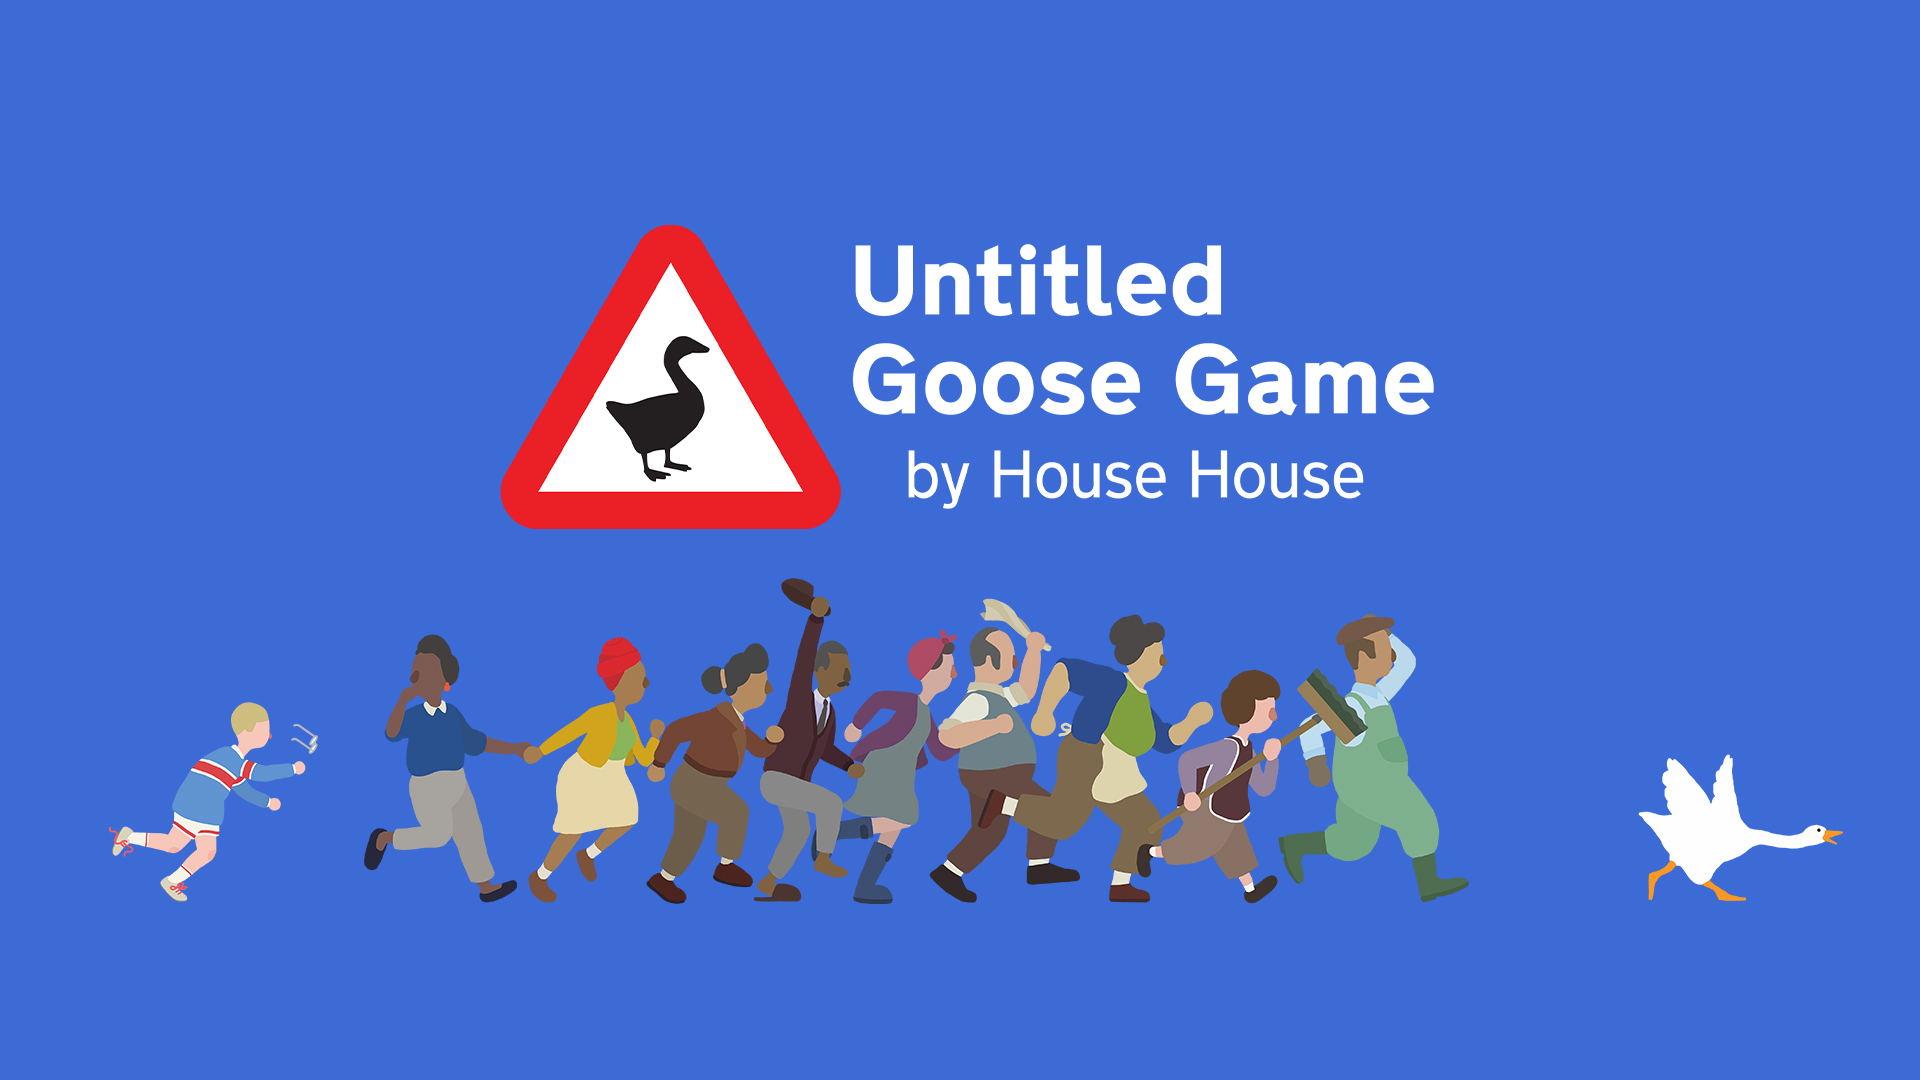 Untlited Goose Game